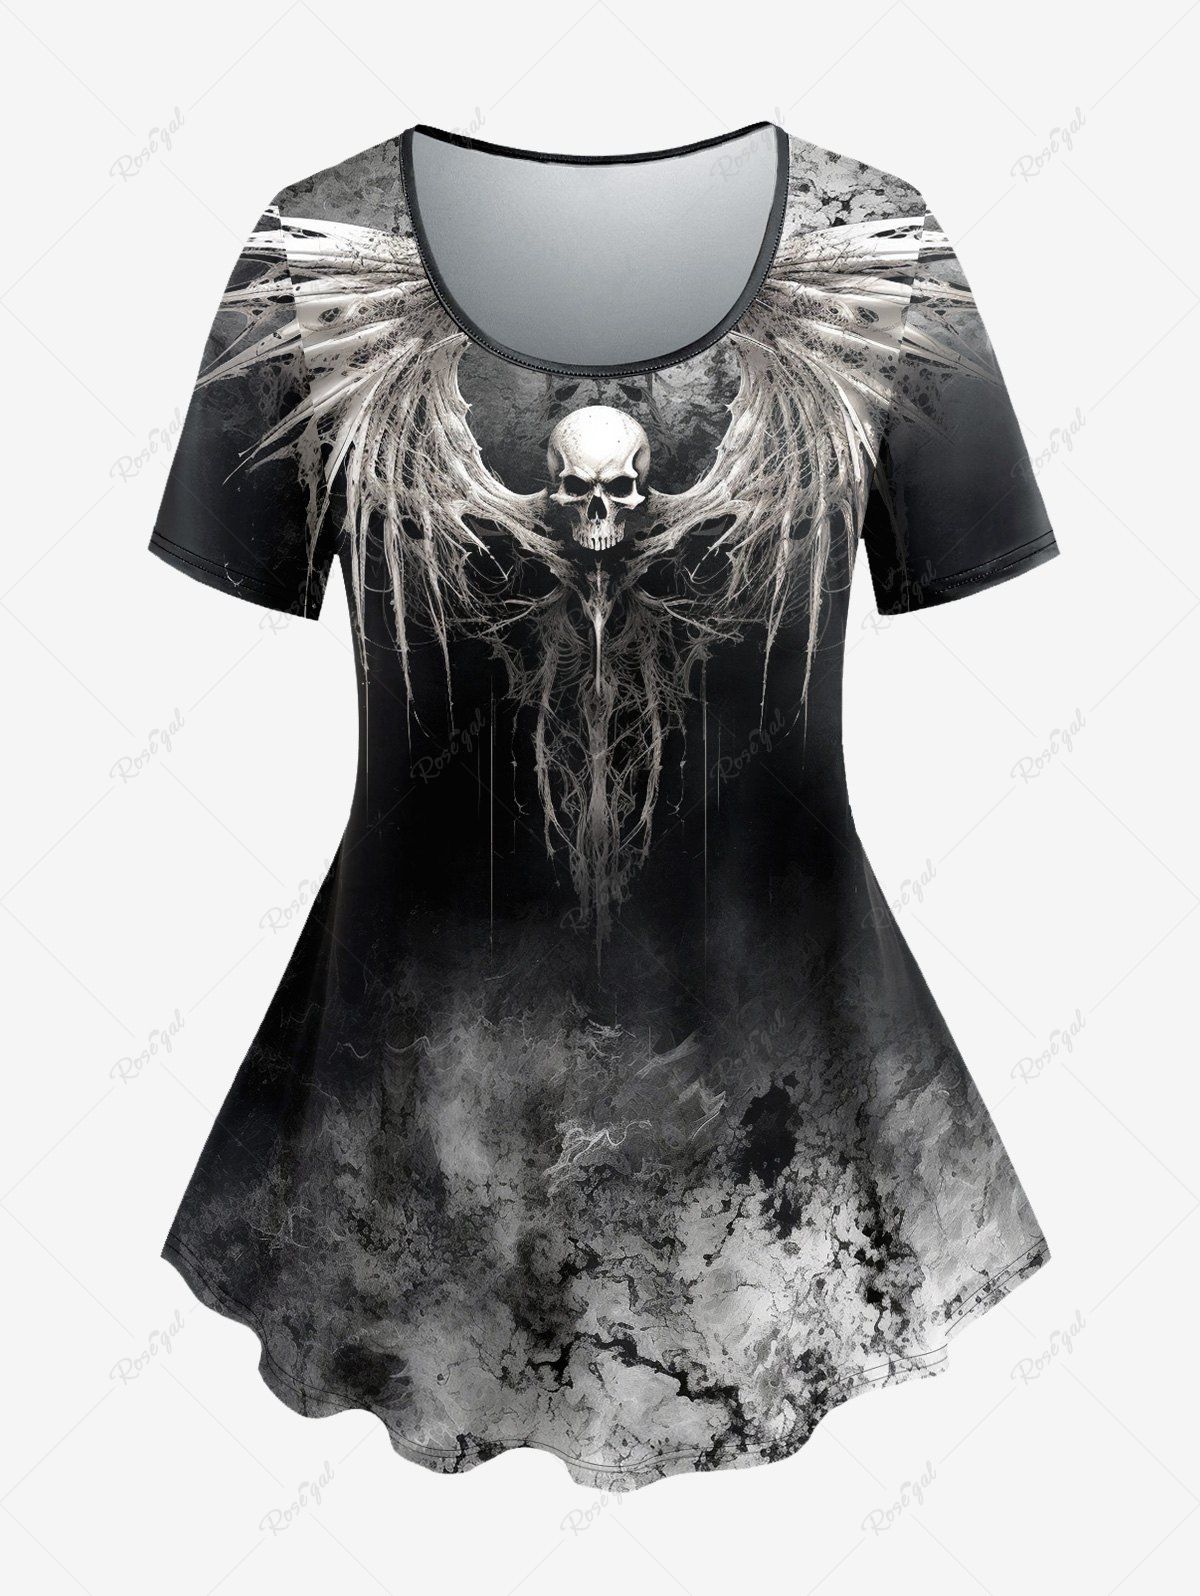 T-shirt D'Halloween Teinté Crâne Ombrée Style Gothique Noir 3X